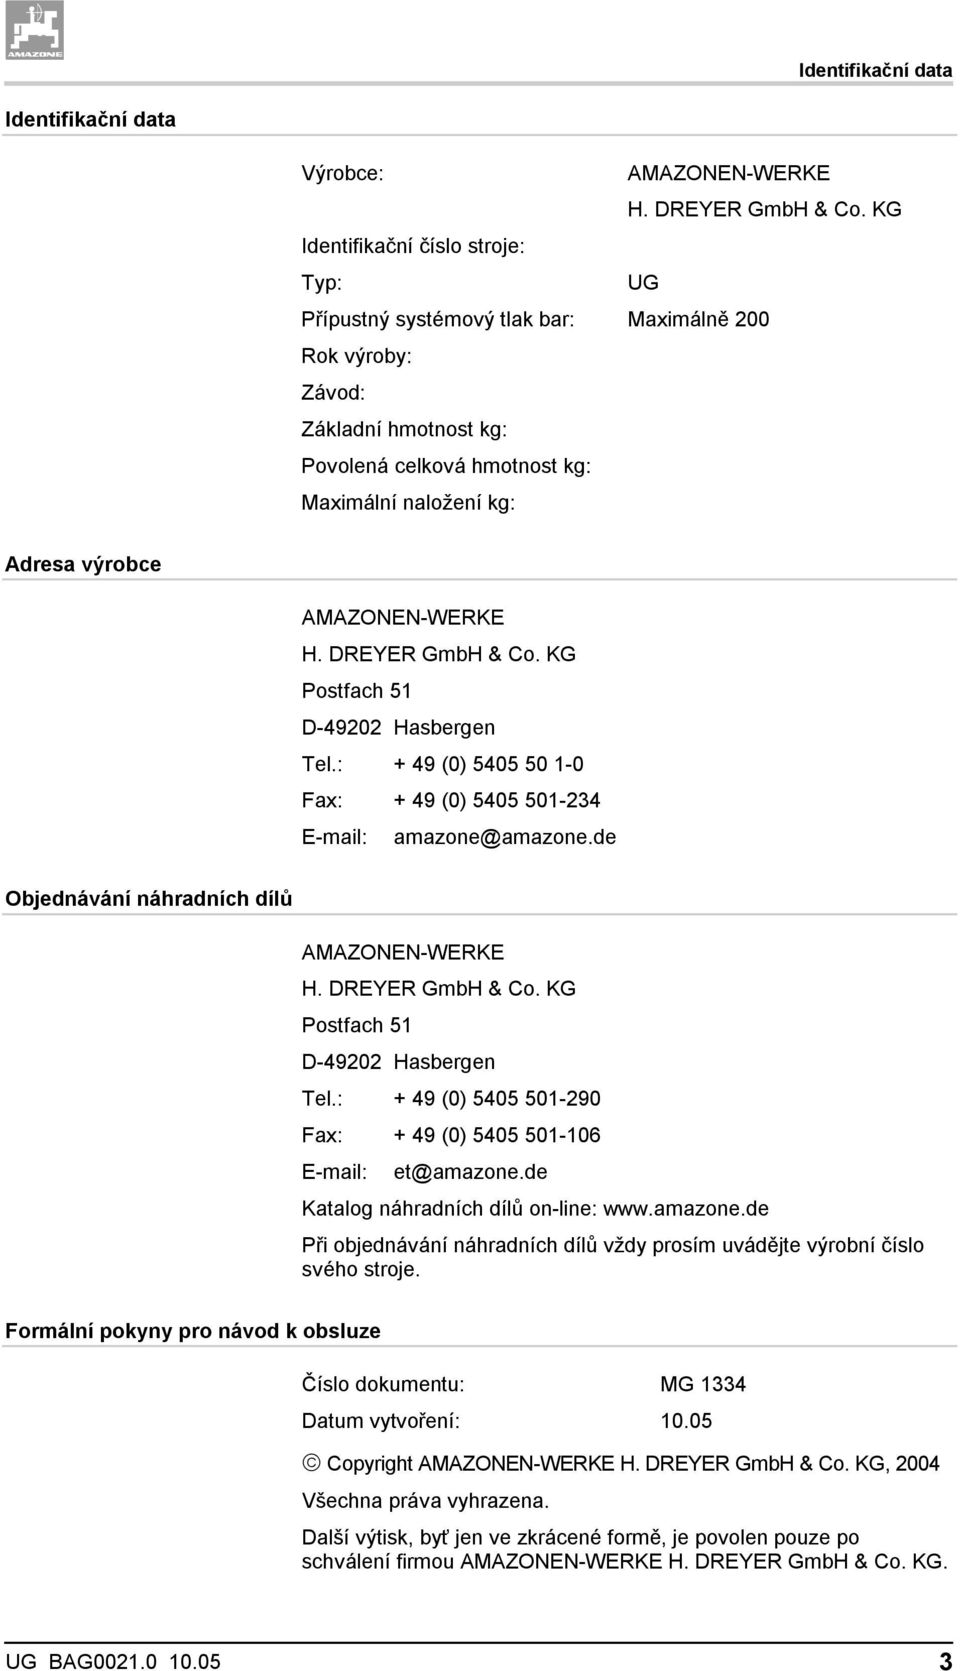 AMAZONEN-WERKE H. DREYER GmbH & Co. KG Postfach 51 D-49202 Hasbergen Tel.: + 49 (0) 5405 50 1-0 Fax: + 49 (0) 5405 501-234 E-mail: amazone@amazone.de Objednávání náhradních dílů AMAZONEN-WERKE H.